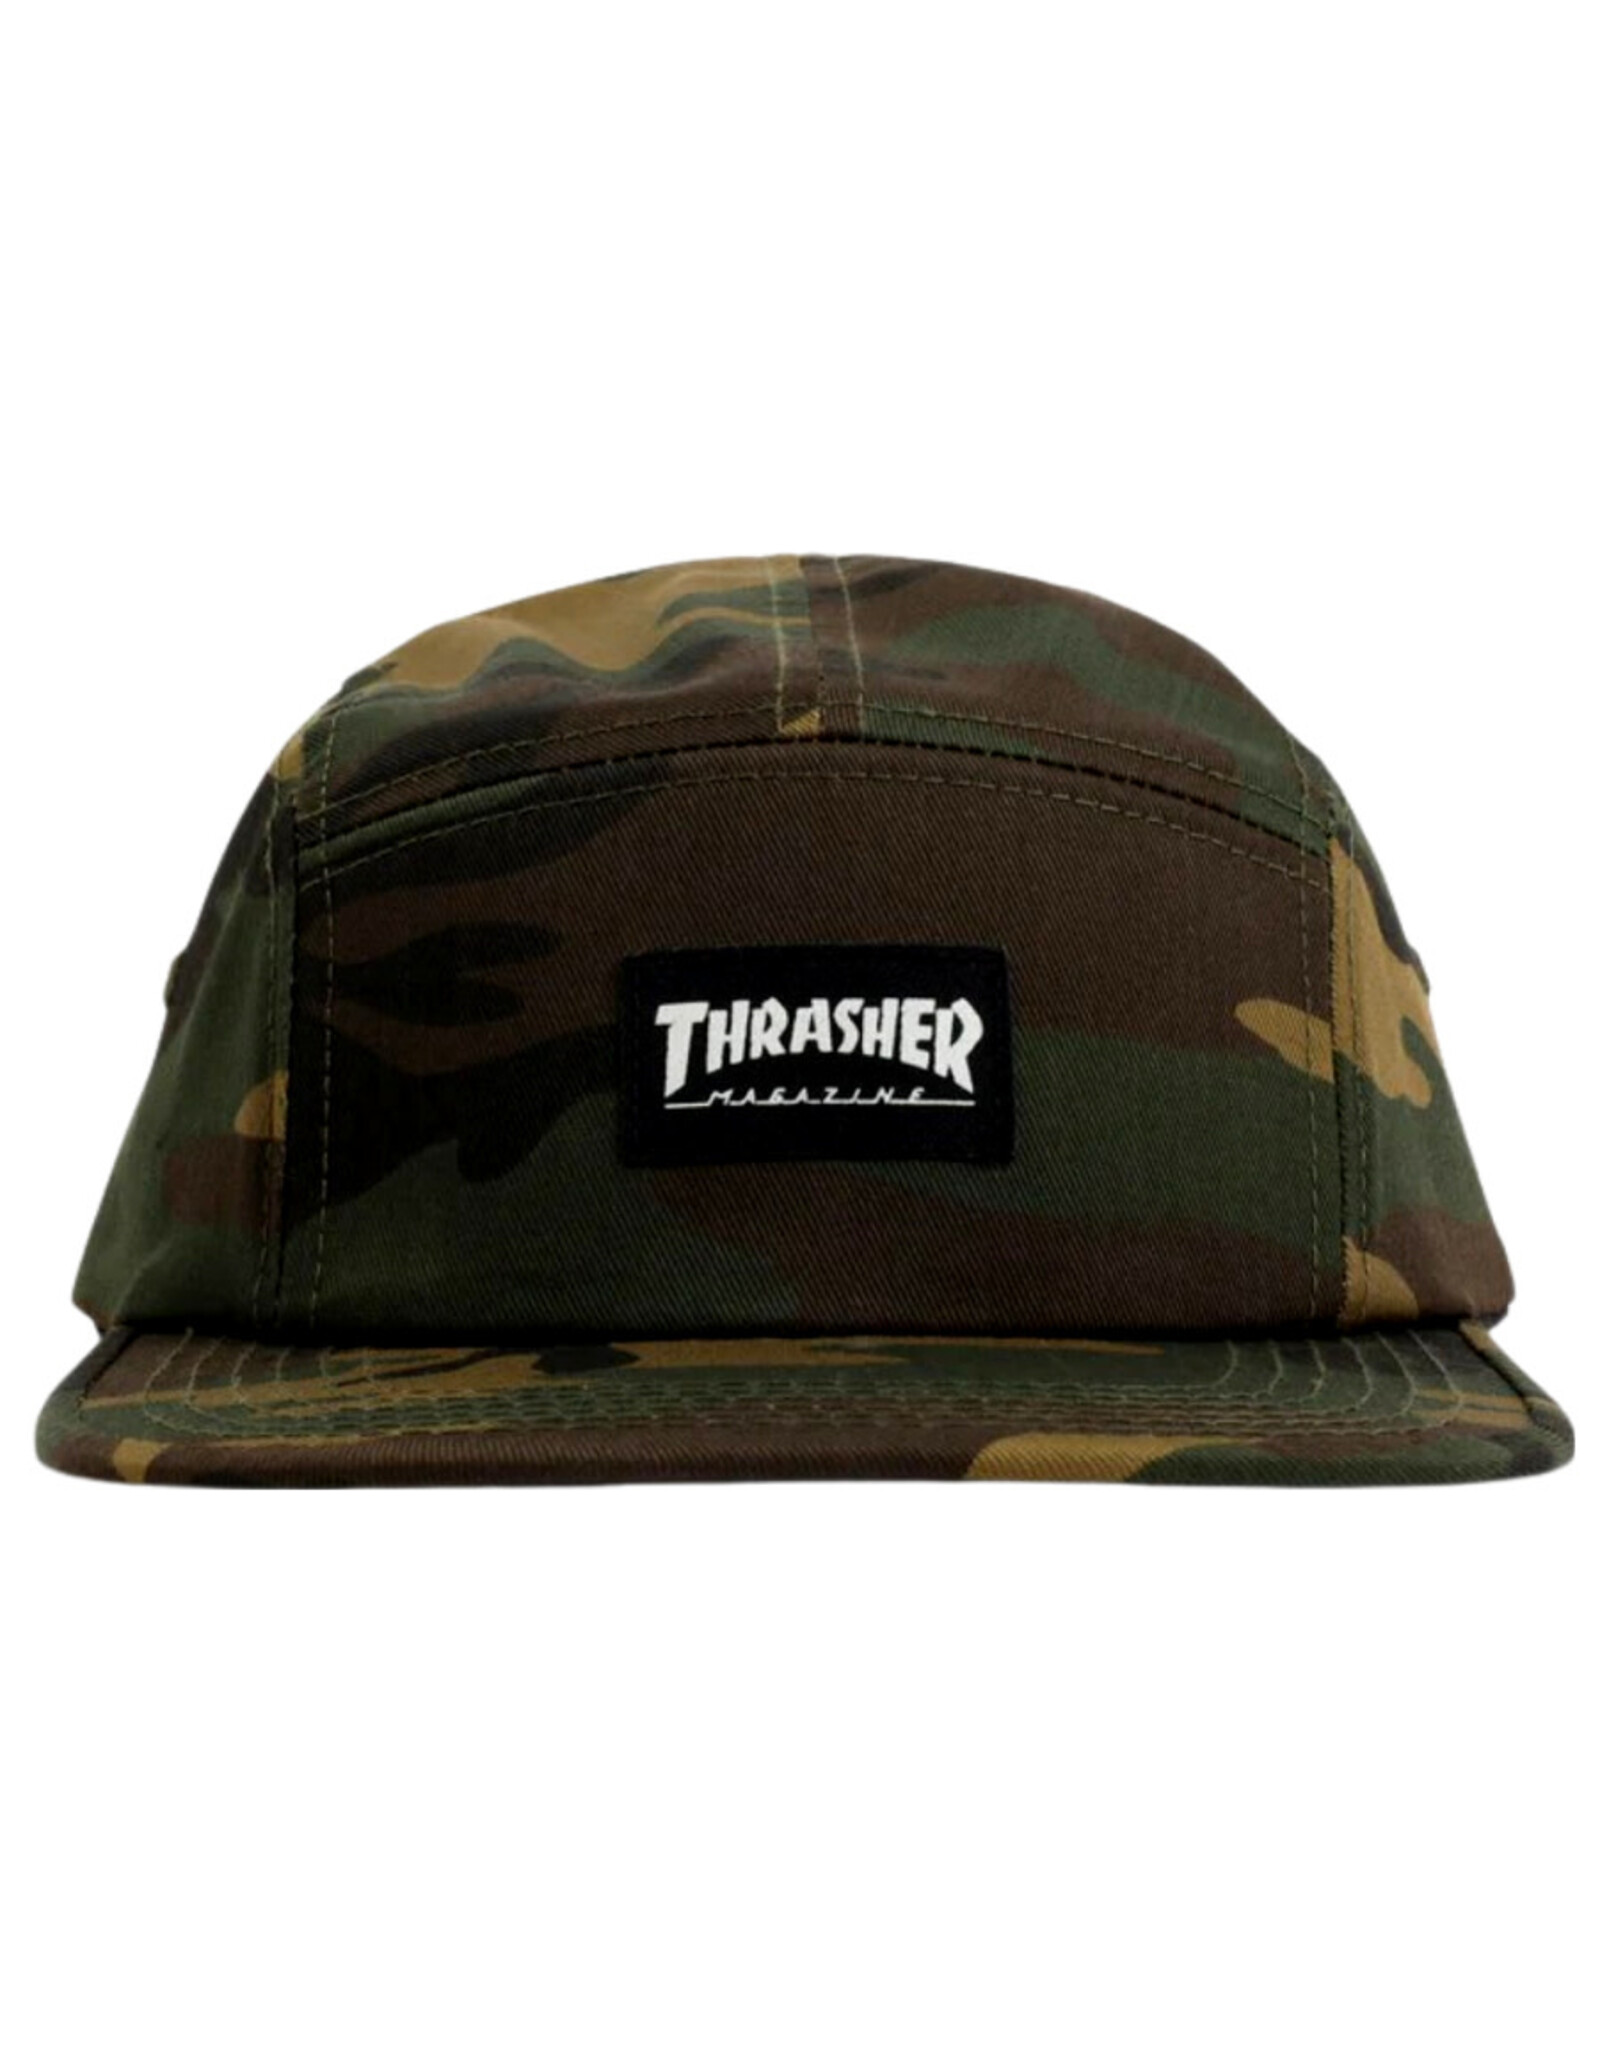 Thrasher Thrasher Hat 5 Panel Strapback (Camo)